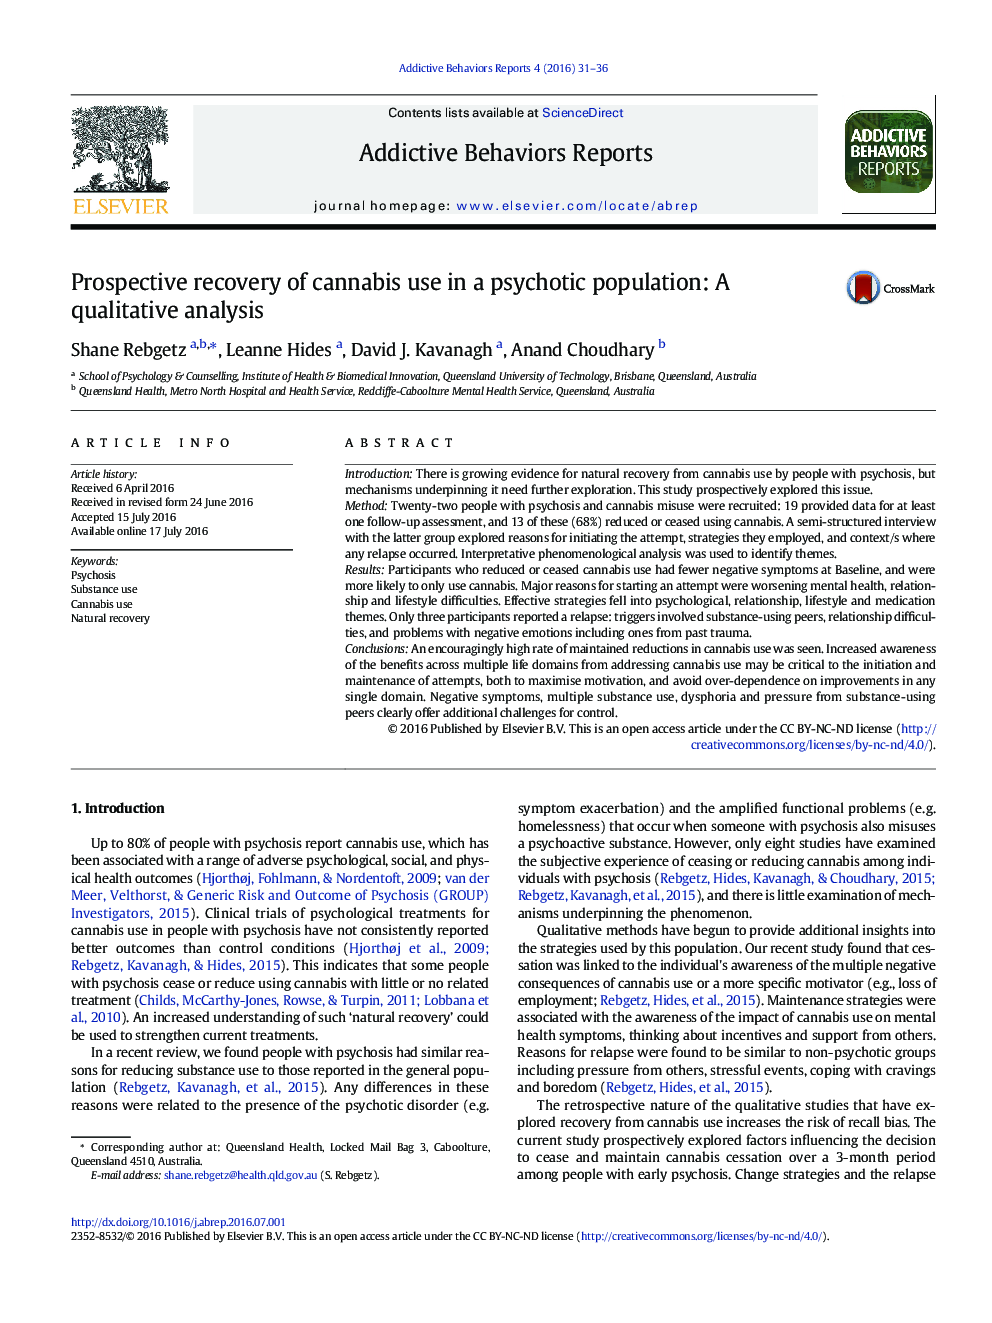 بازیابی آینده نگر از مصرف کانابیس در یک جمعیت روانی: تجزیه و تحلیل کیفی